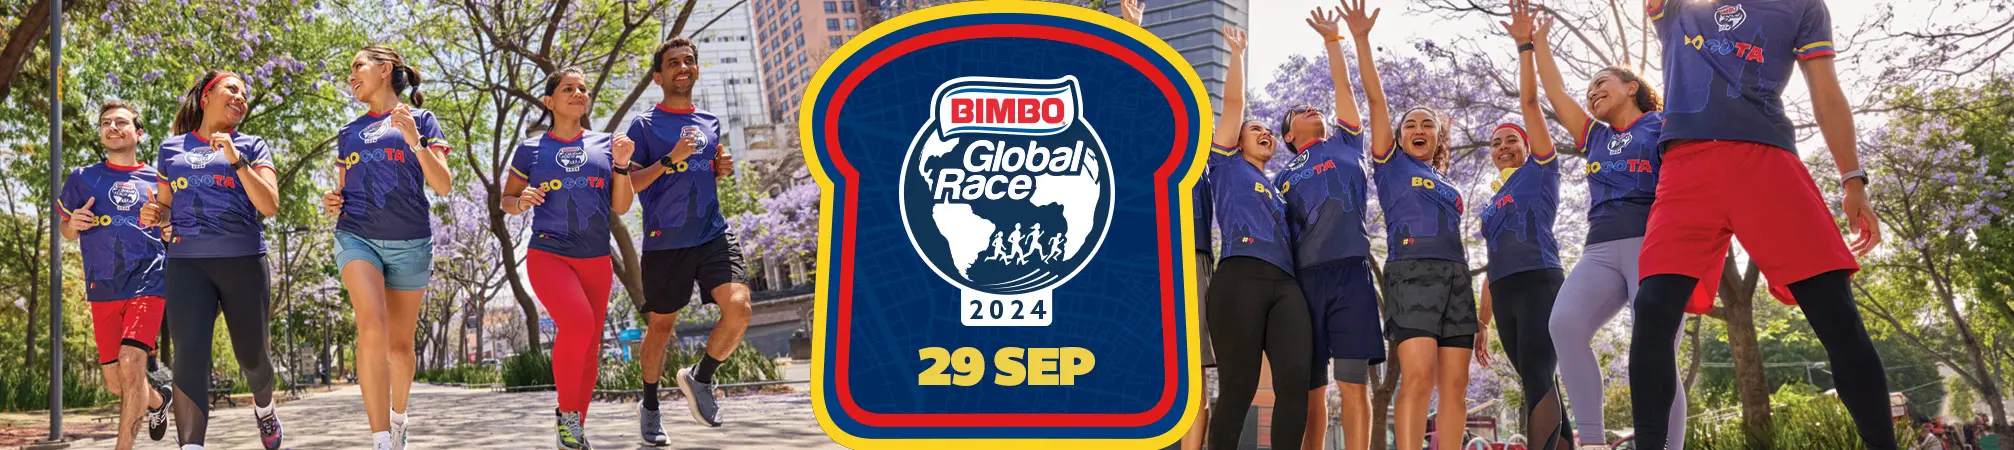 header campaña Bimbo Global Race 2024